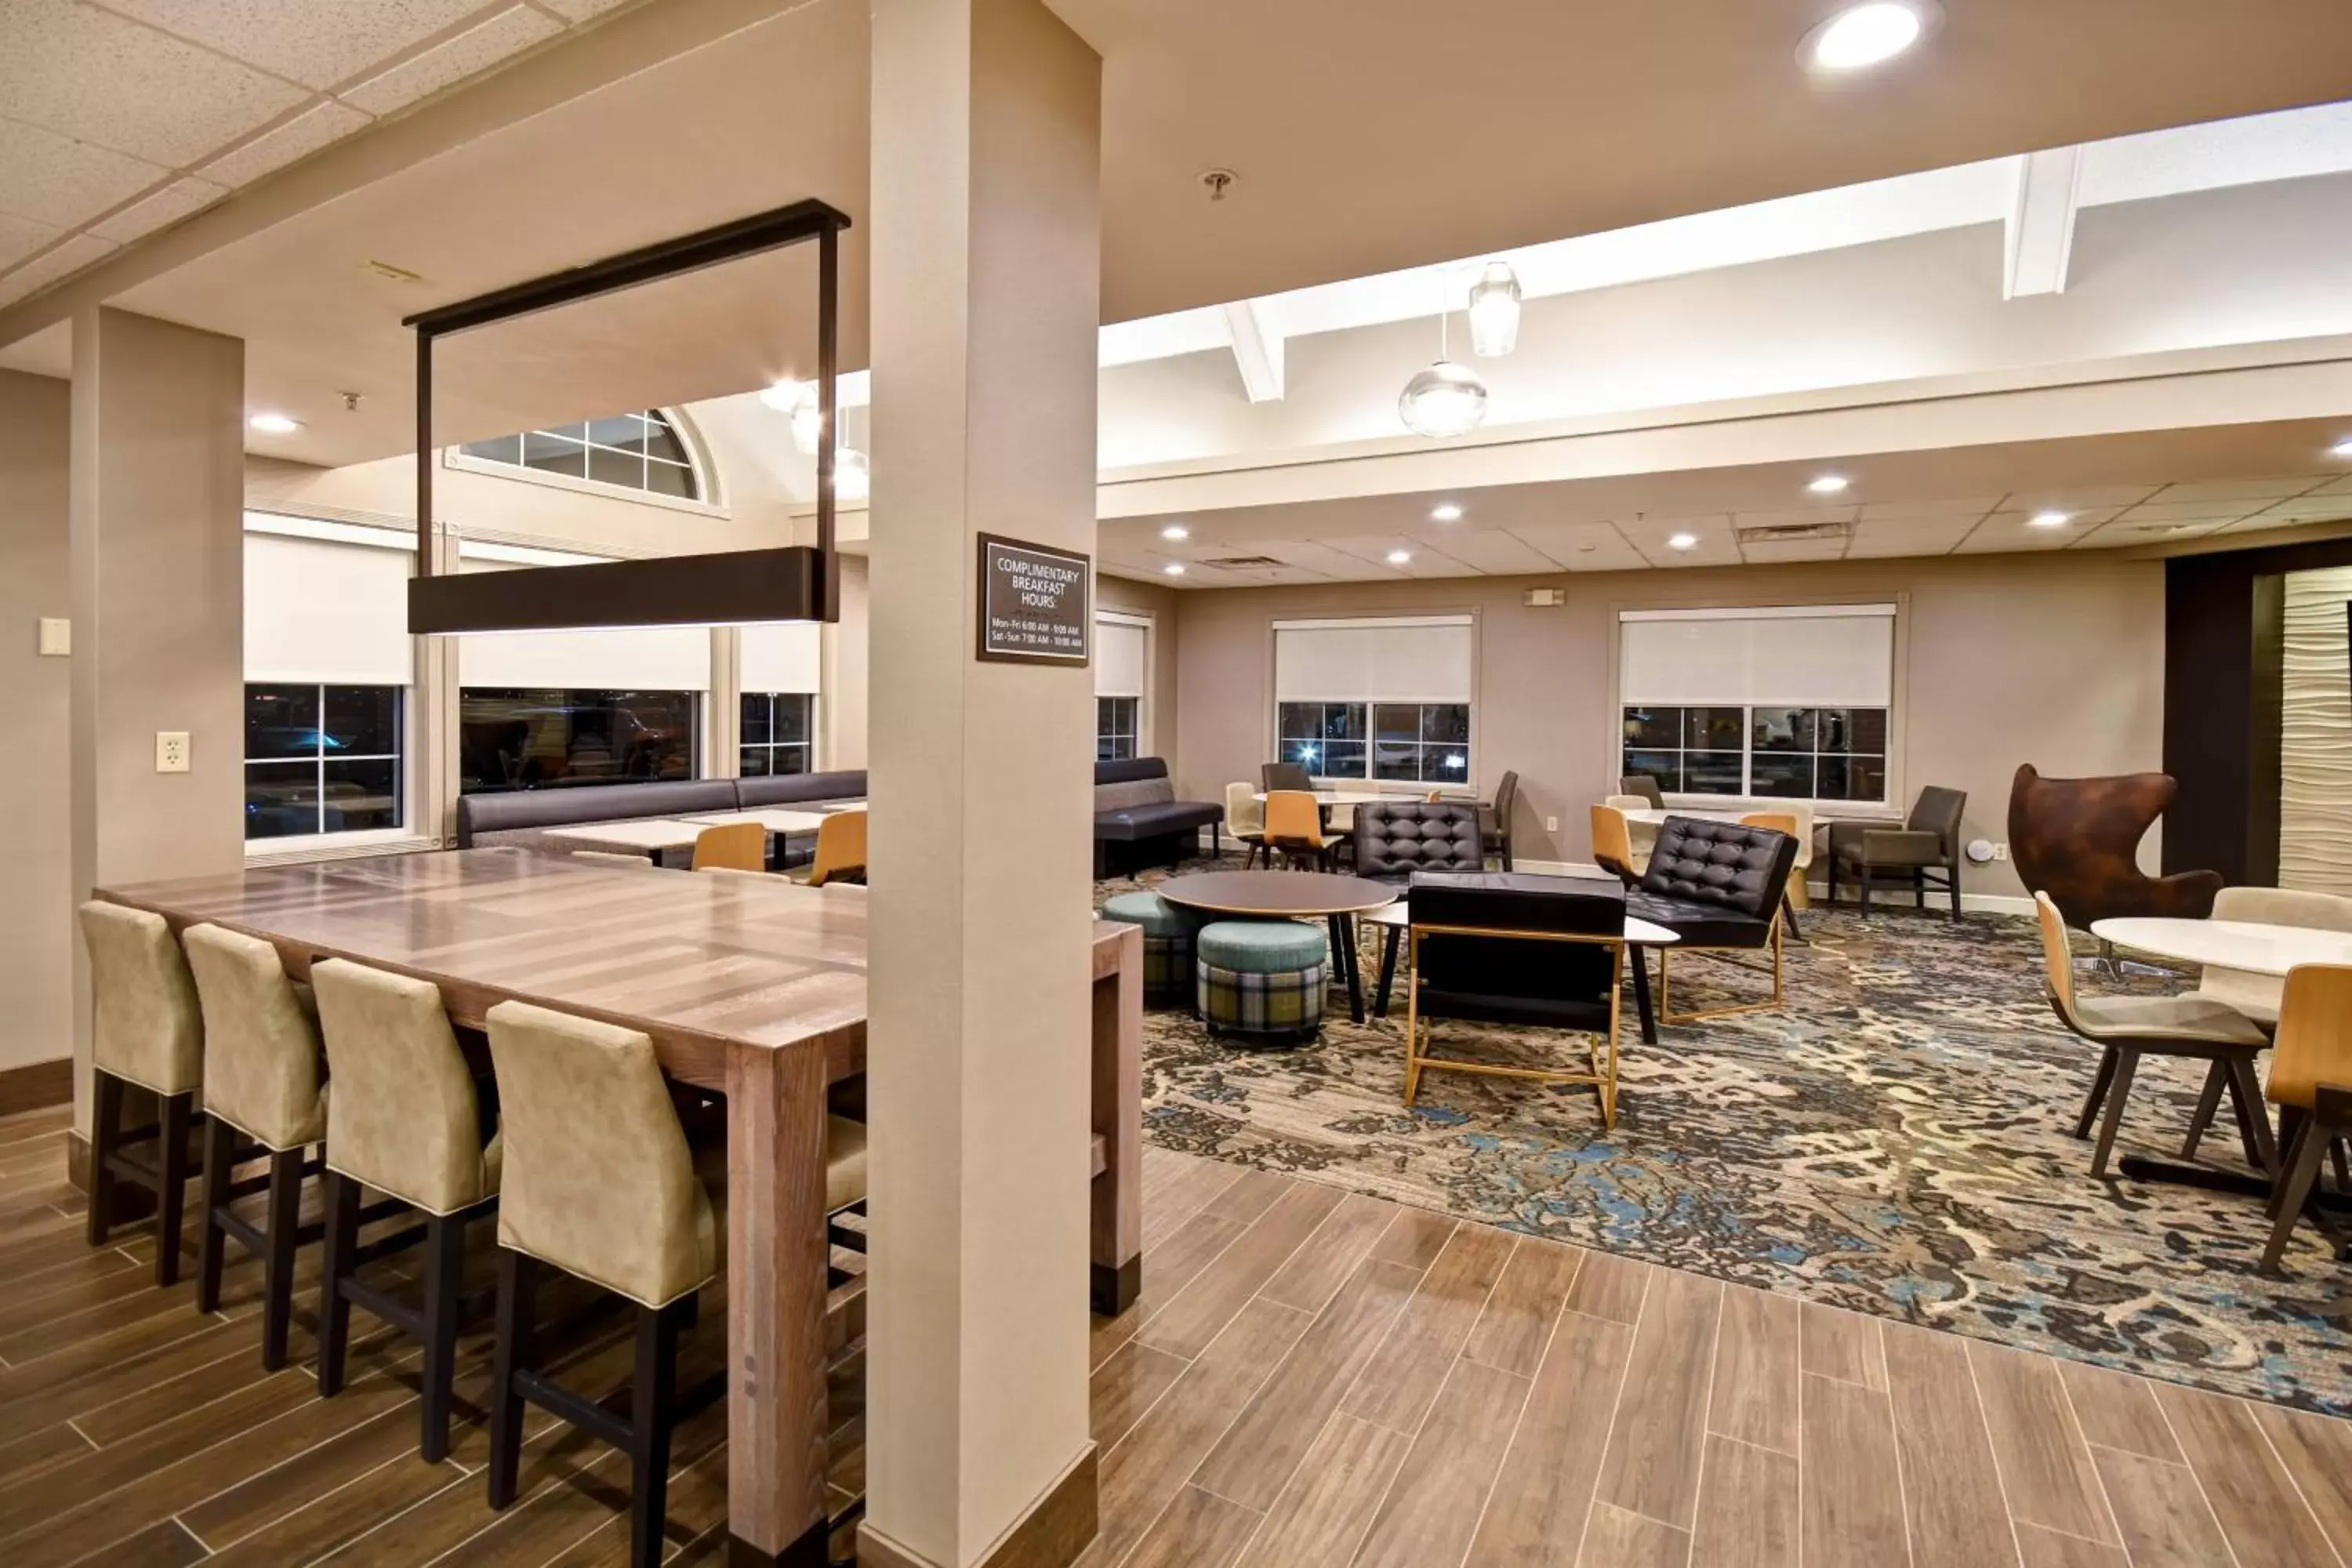 Lobby or reception, Restaurant/Places to Eat in Residence Inn by Marriott Dayton Beavercreek